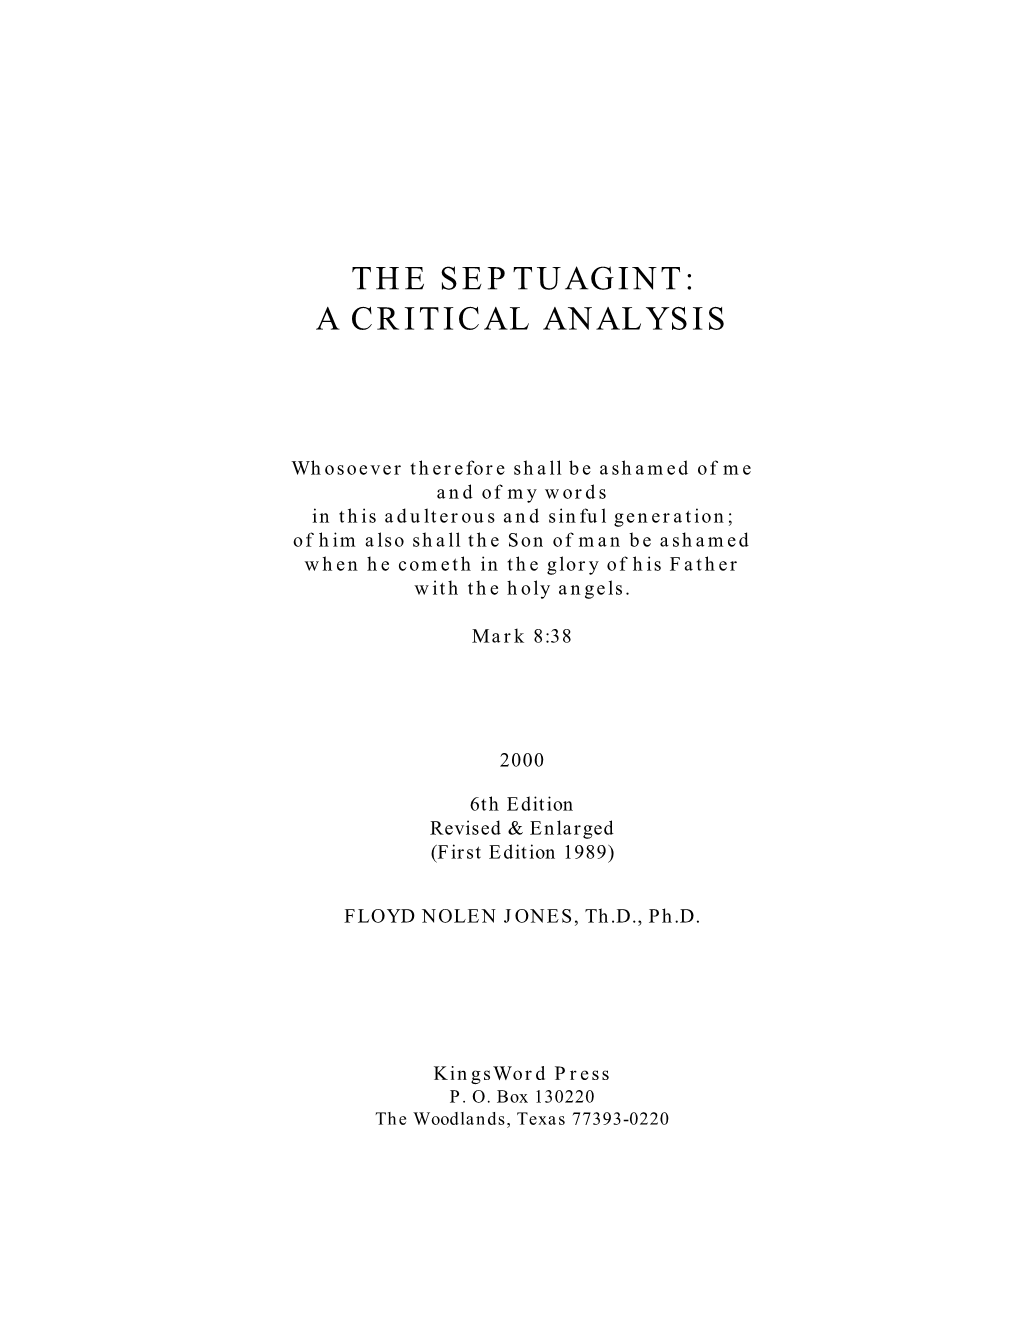 The Septuagint a Critical Analysis Dr Floyd Nolen Jones Phd